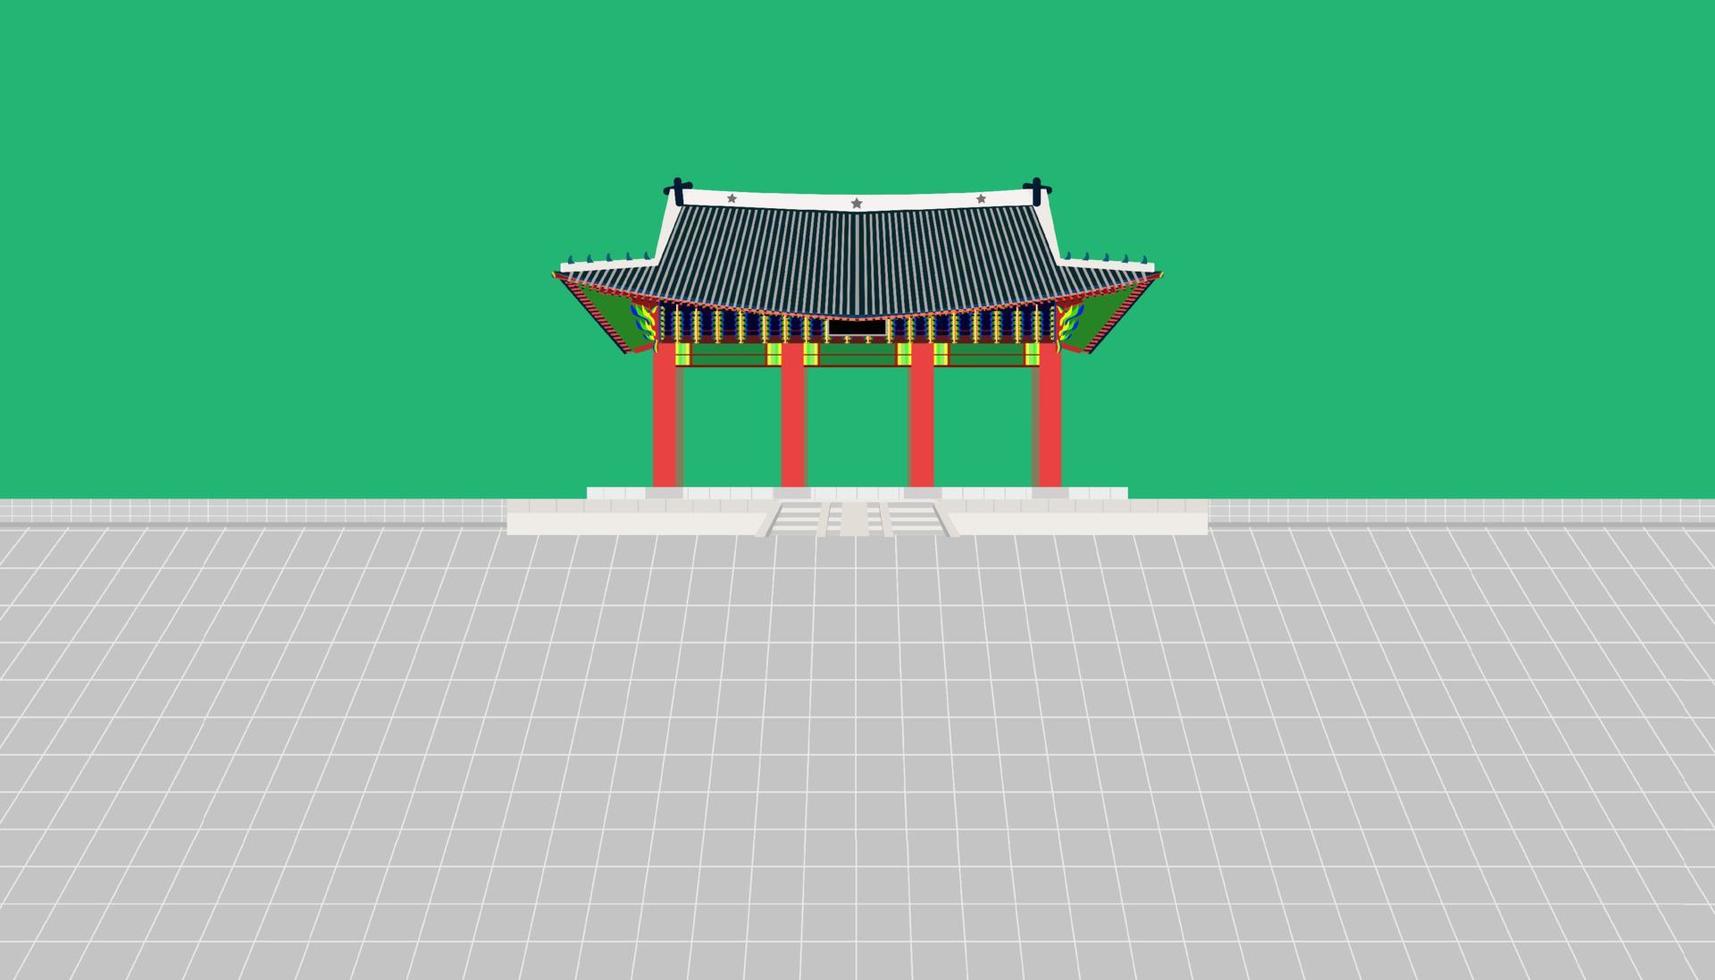 pared larga de la puerta injeongmun y gran patio en el palacio changedoekgung en seúl, corea del sur, ilustración vectorial eps10 vector